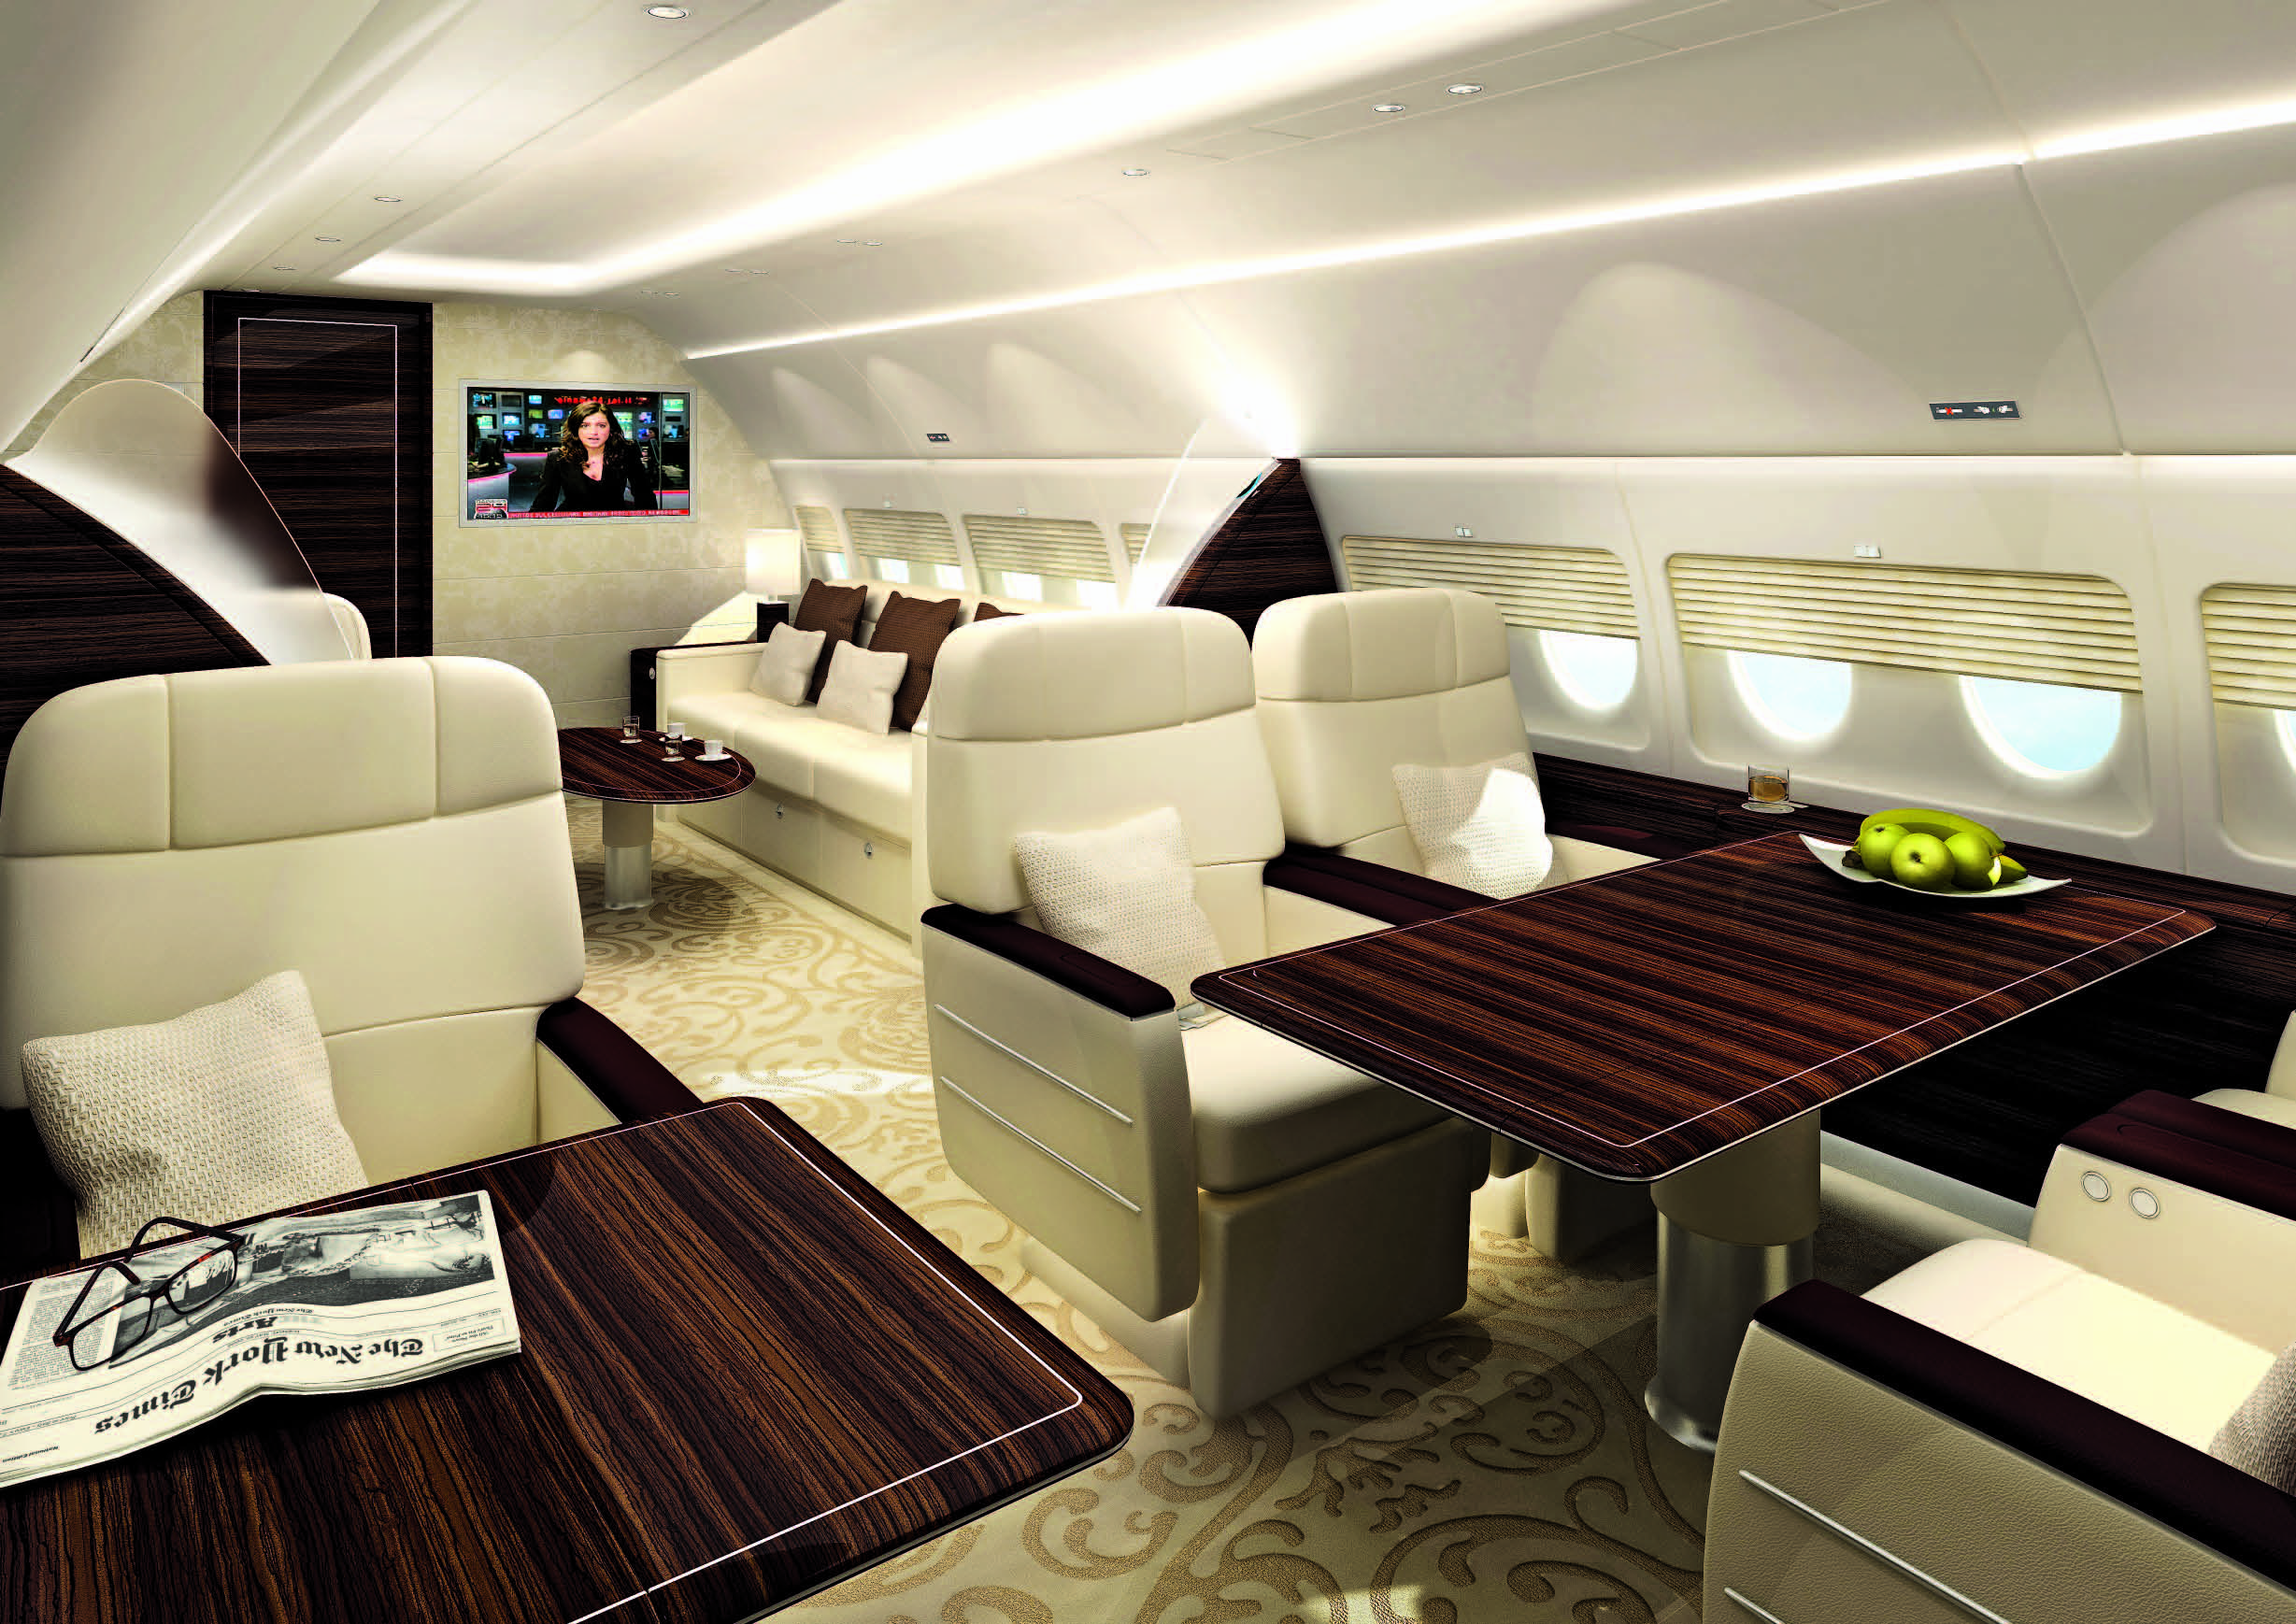 Аренда частного самолета. SSJ-100 бизнес Джет. Сухой бизнес Джет 100. Суперджет бизнес Джет. Sukhoi Business Jet в VIP-комплектации.